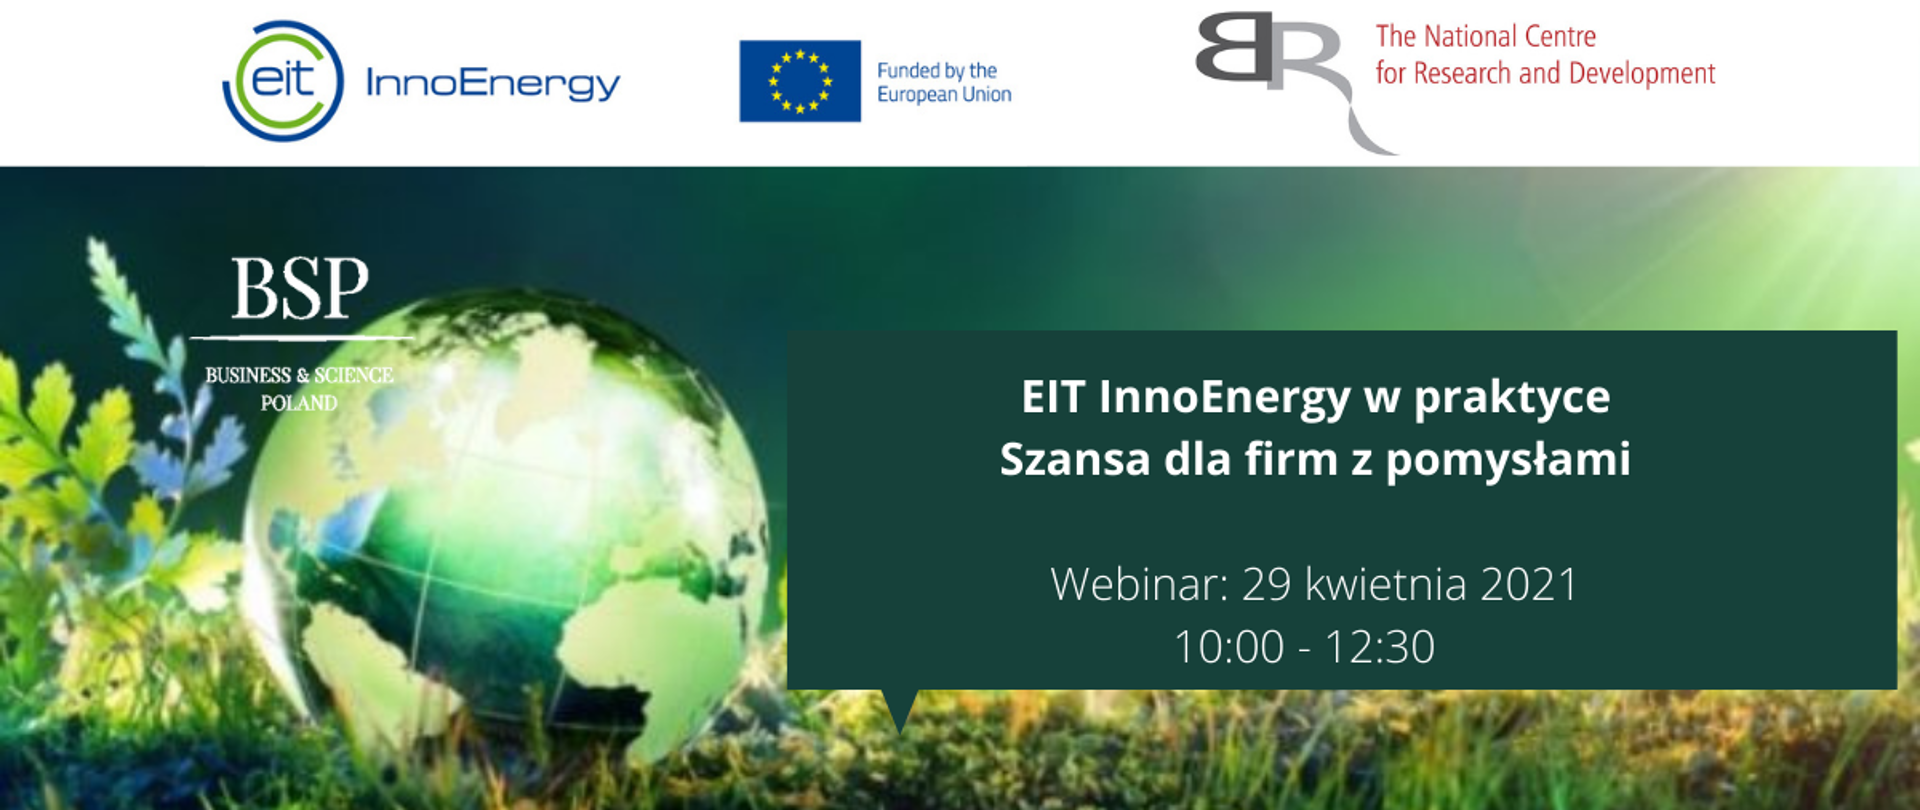 EIT InnoEnergy w praktyce: Szansa dla firm z pomysłami